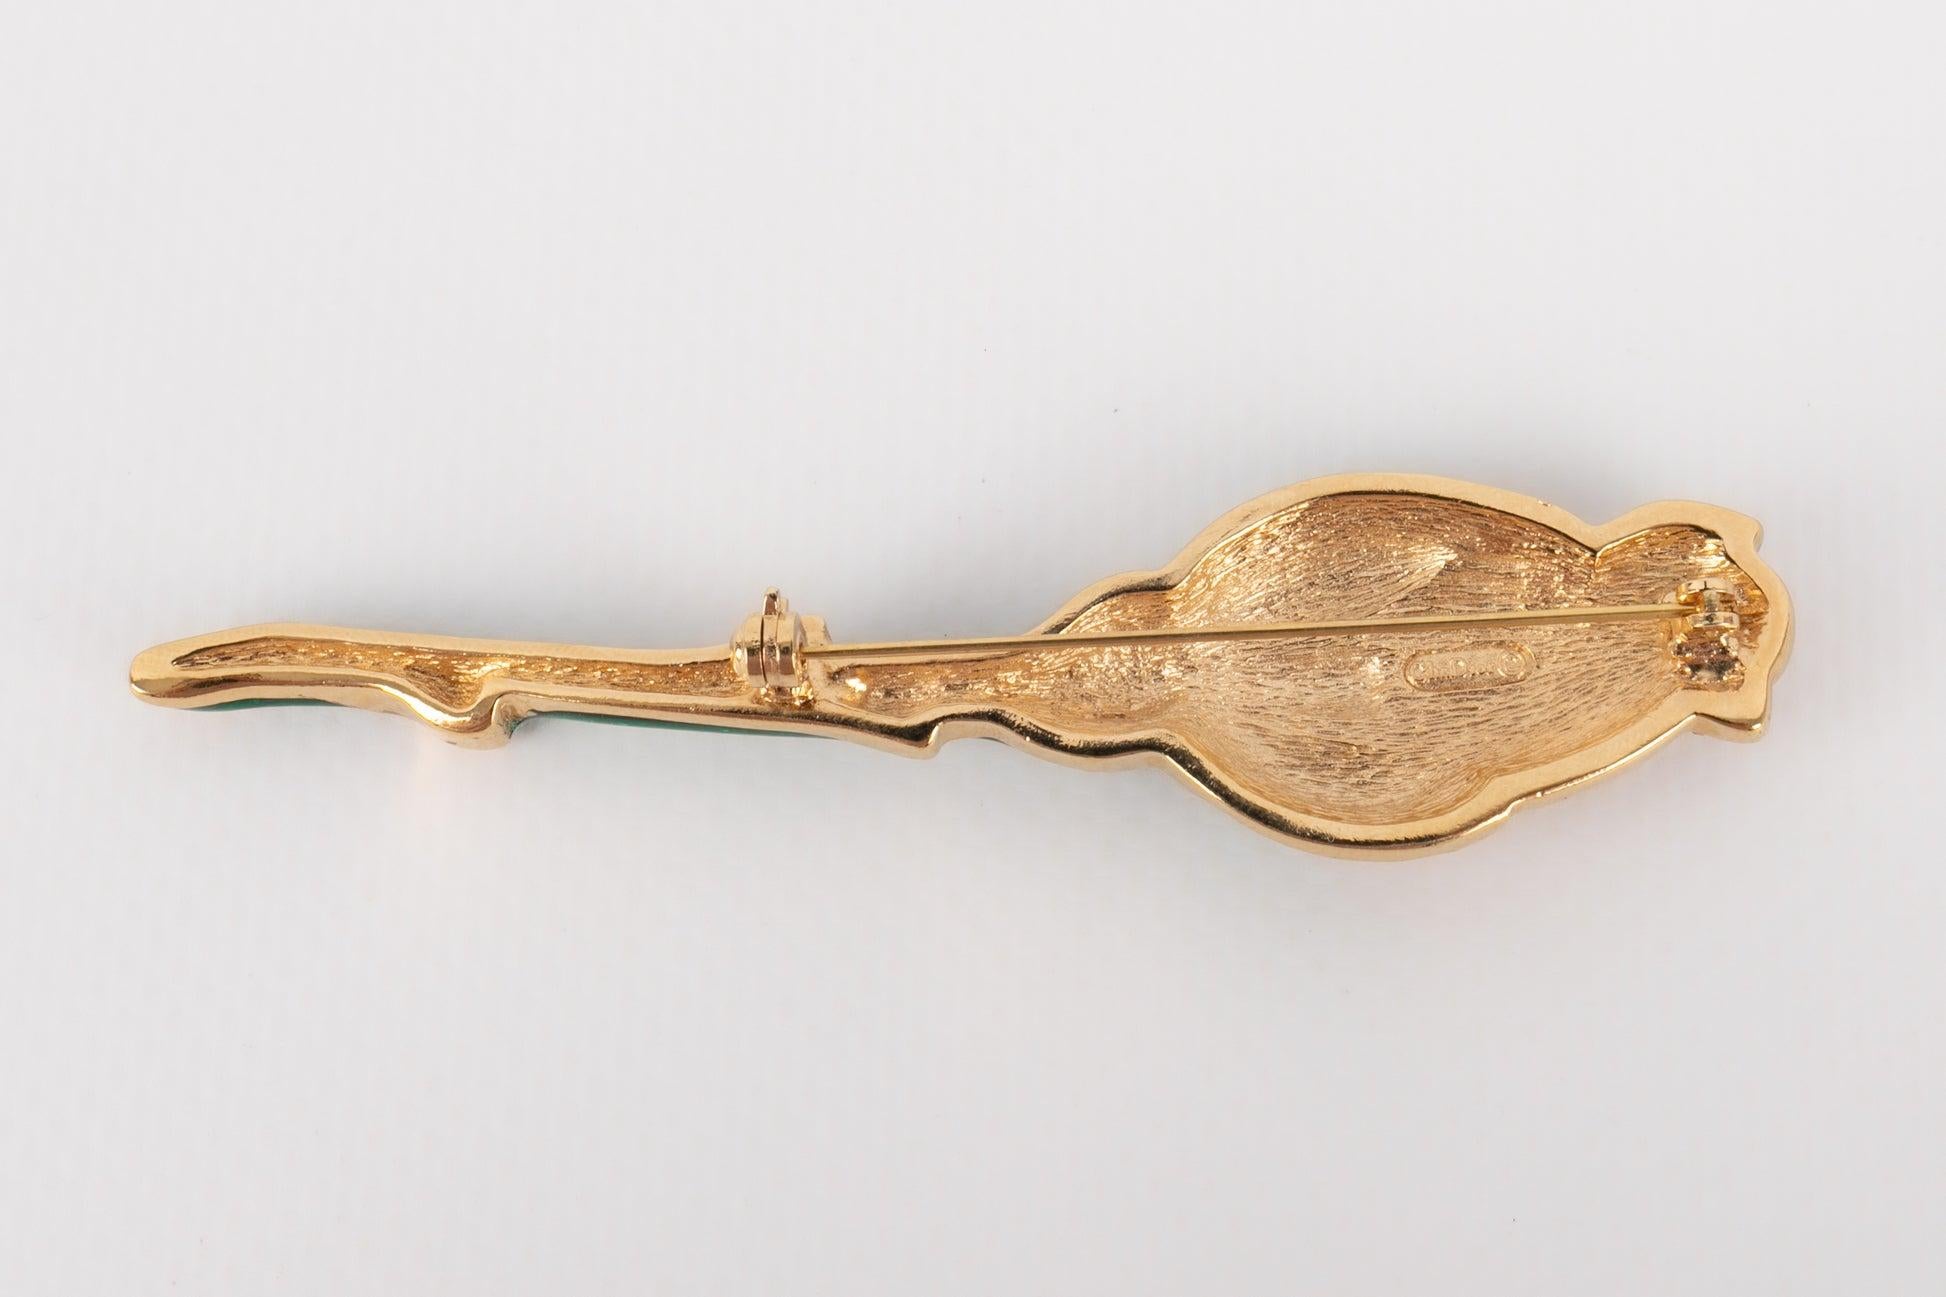 Dior - Goldene Metallbrosche, die eine mit Strasssteinen und Emaille verzierte Blume darstellt.

Zusätzliche Informationen: 
Zustand: Sehr guter Zustand
Abmessungen: 8,5 cm x 2 cm

Referenz des Sellers: BR129